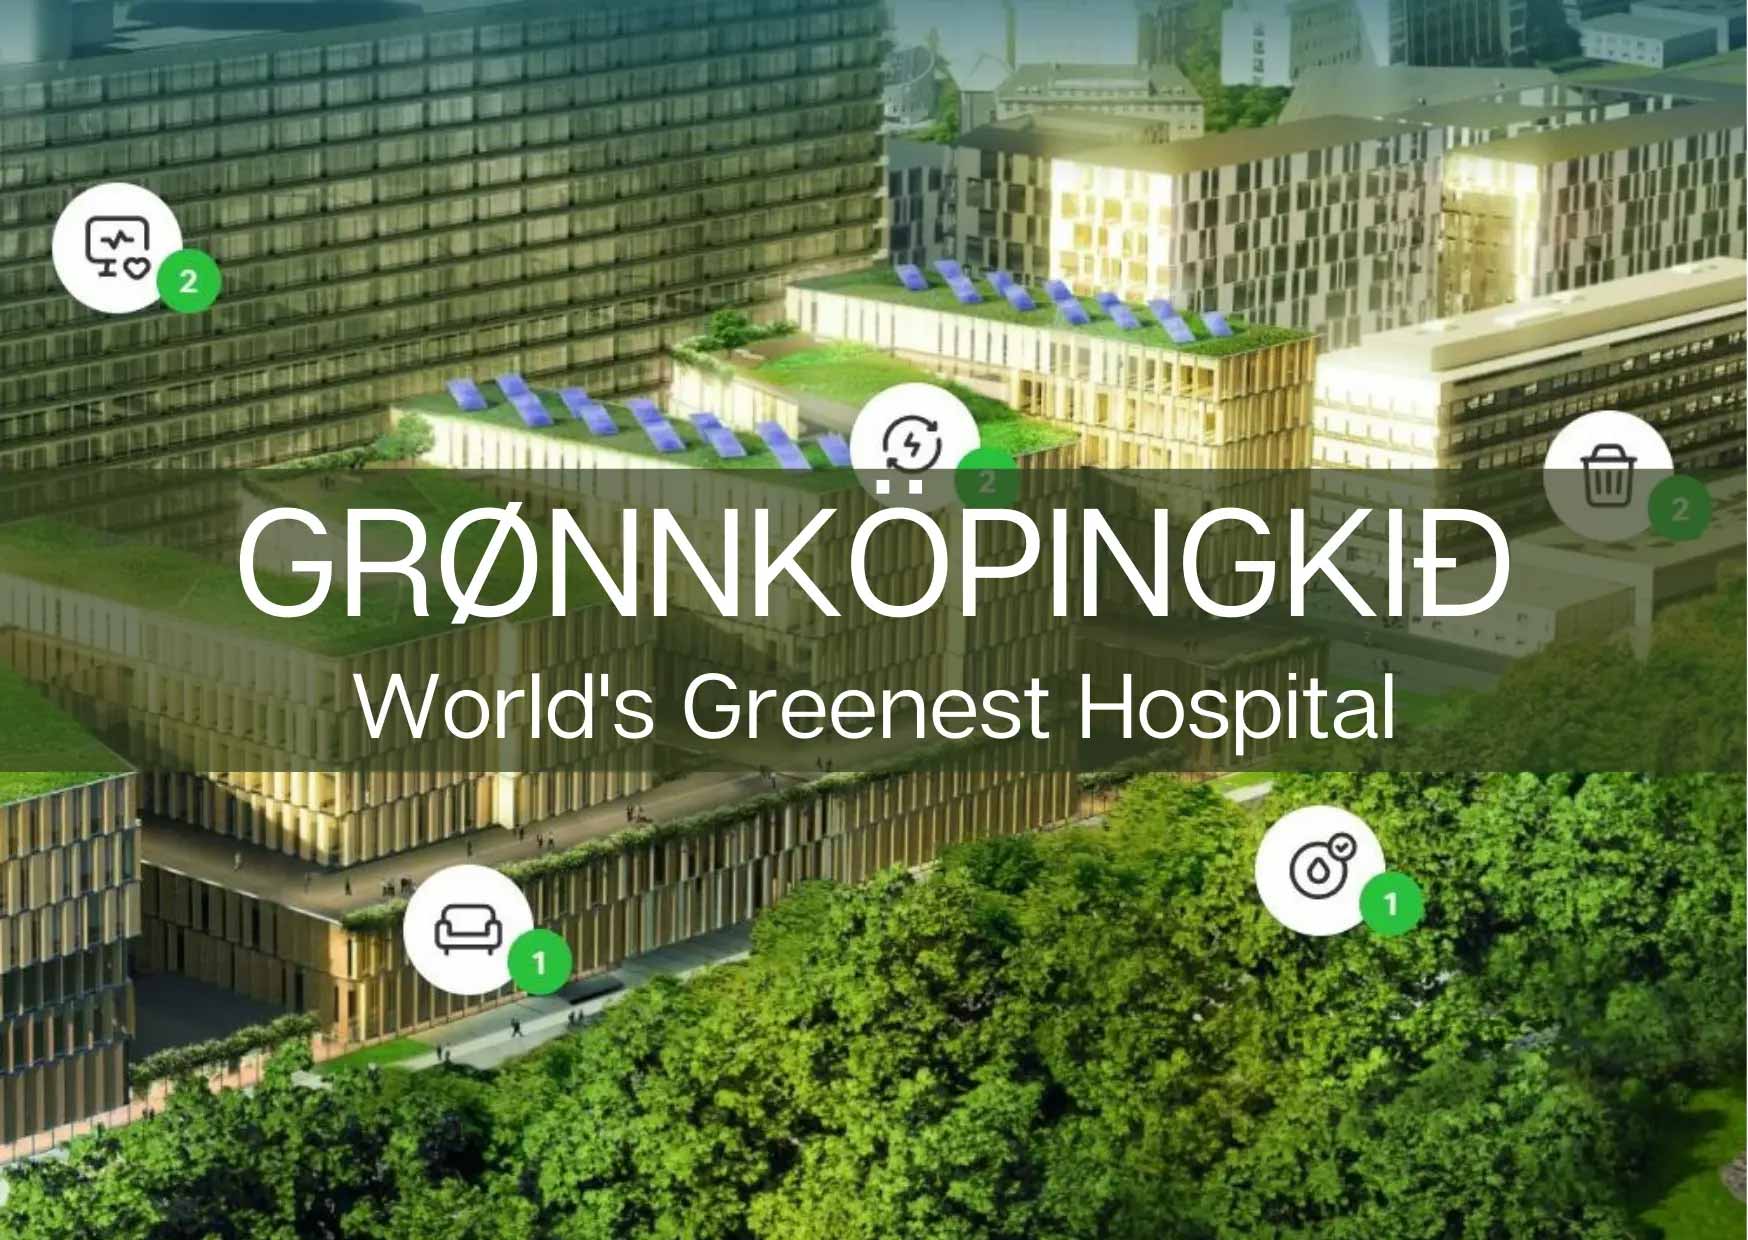 Grønnköpingkið &ndash; The world's greenest hospital